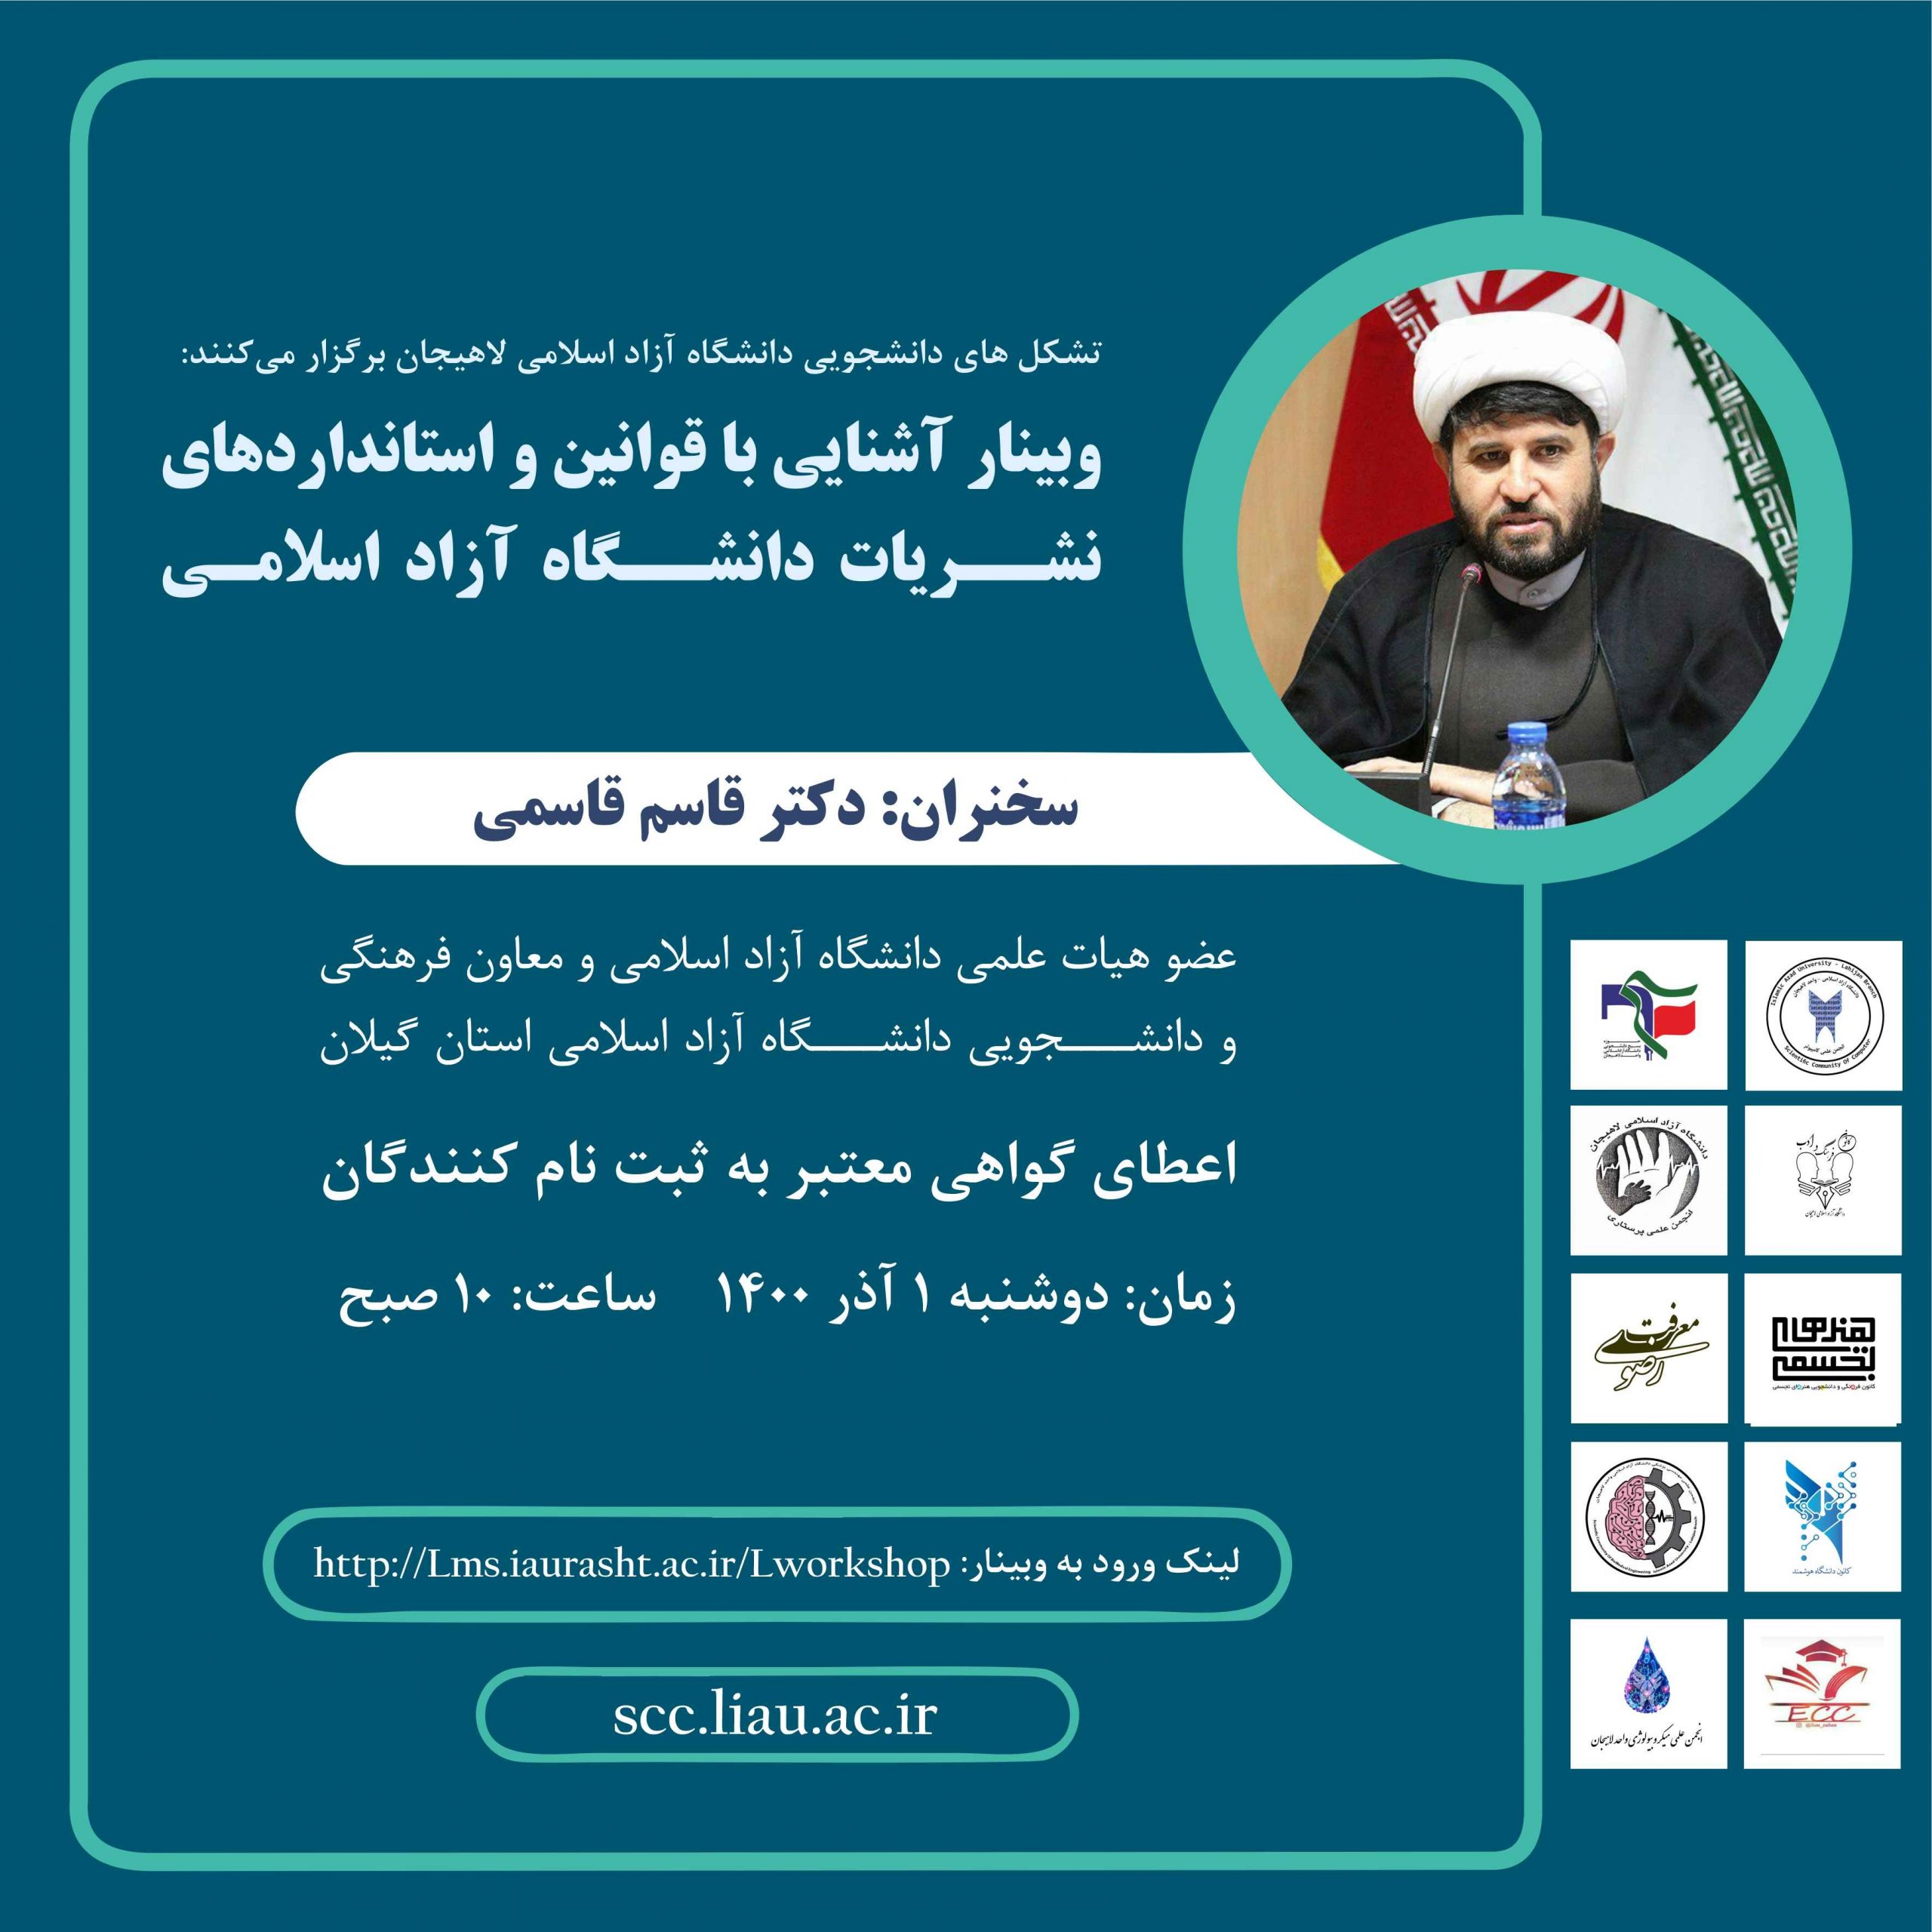 وبینار آشنایی با قوانین و استانداردهای نشریات دانشگاه آزاد اسلامی